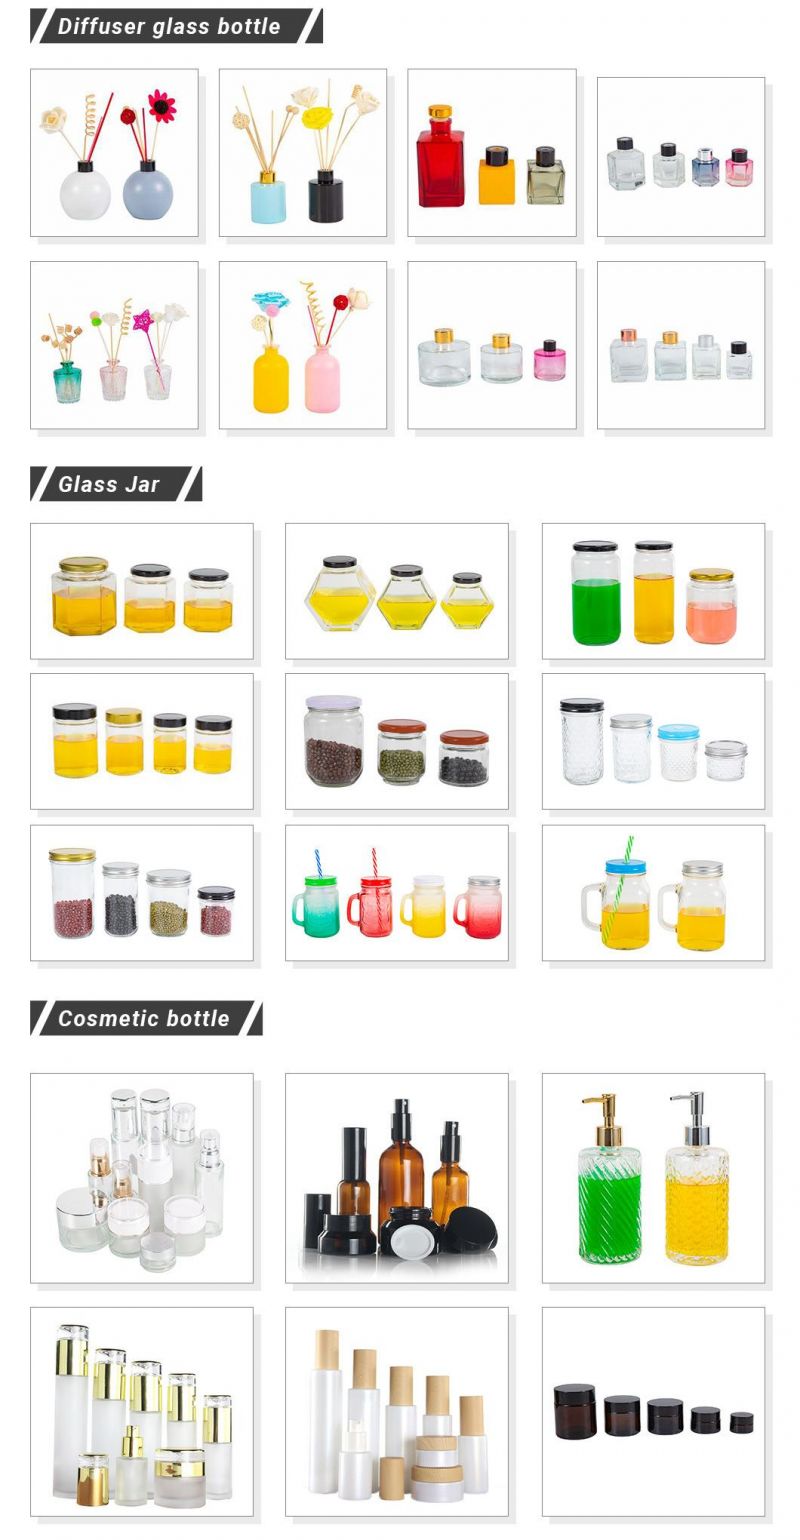 OEM Glass Bottles for Juice, Coffee, Kombucha, Beverage